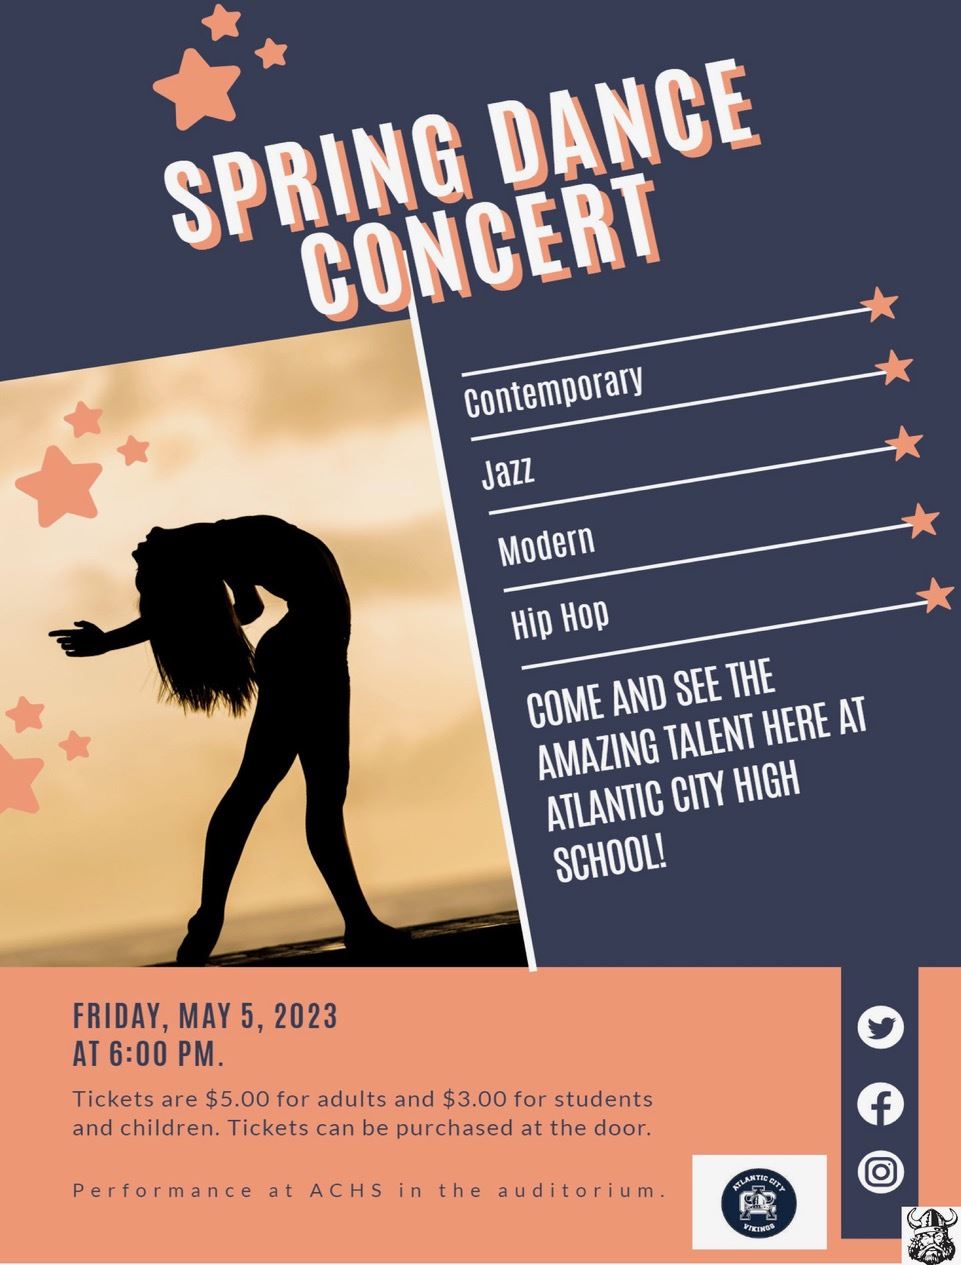  Spring Dance Concert Flyer